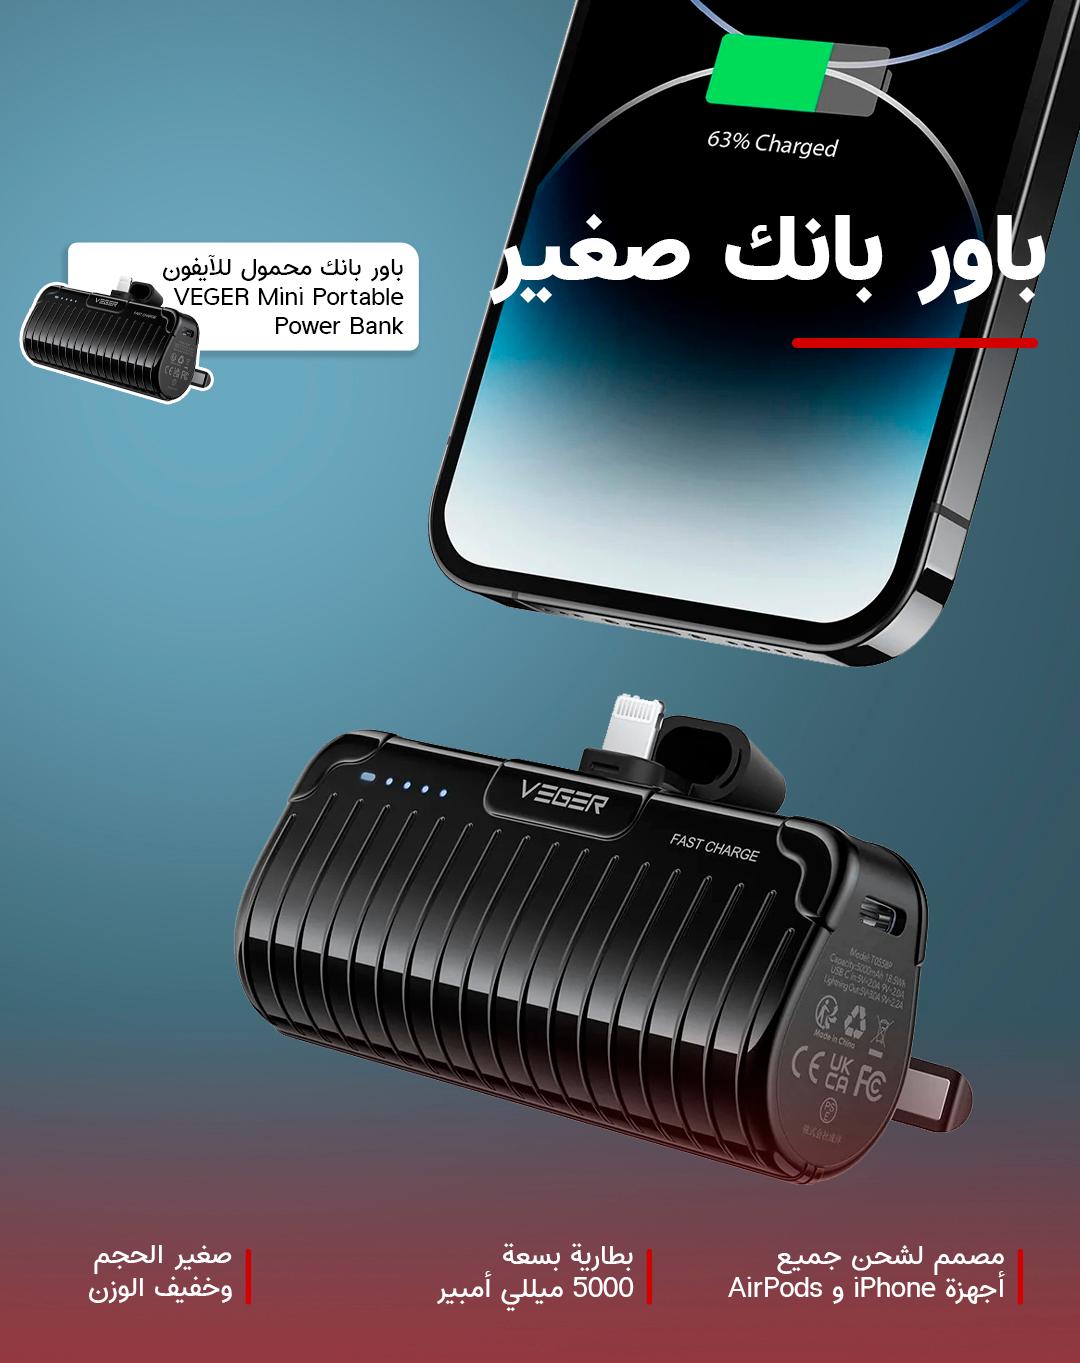 VEGER Mini Portable Power Bank 5000mAh